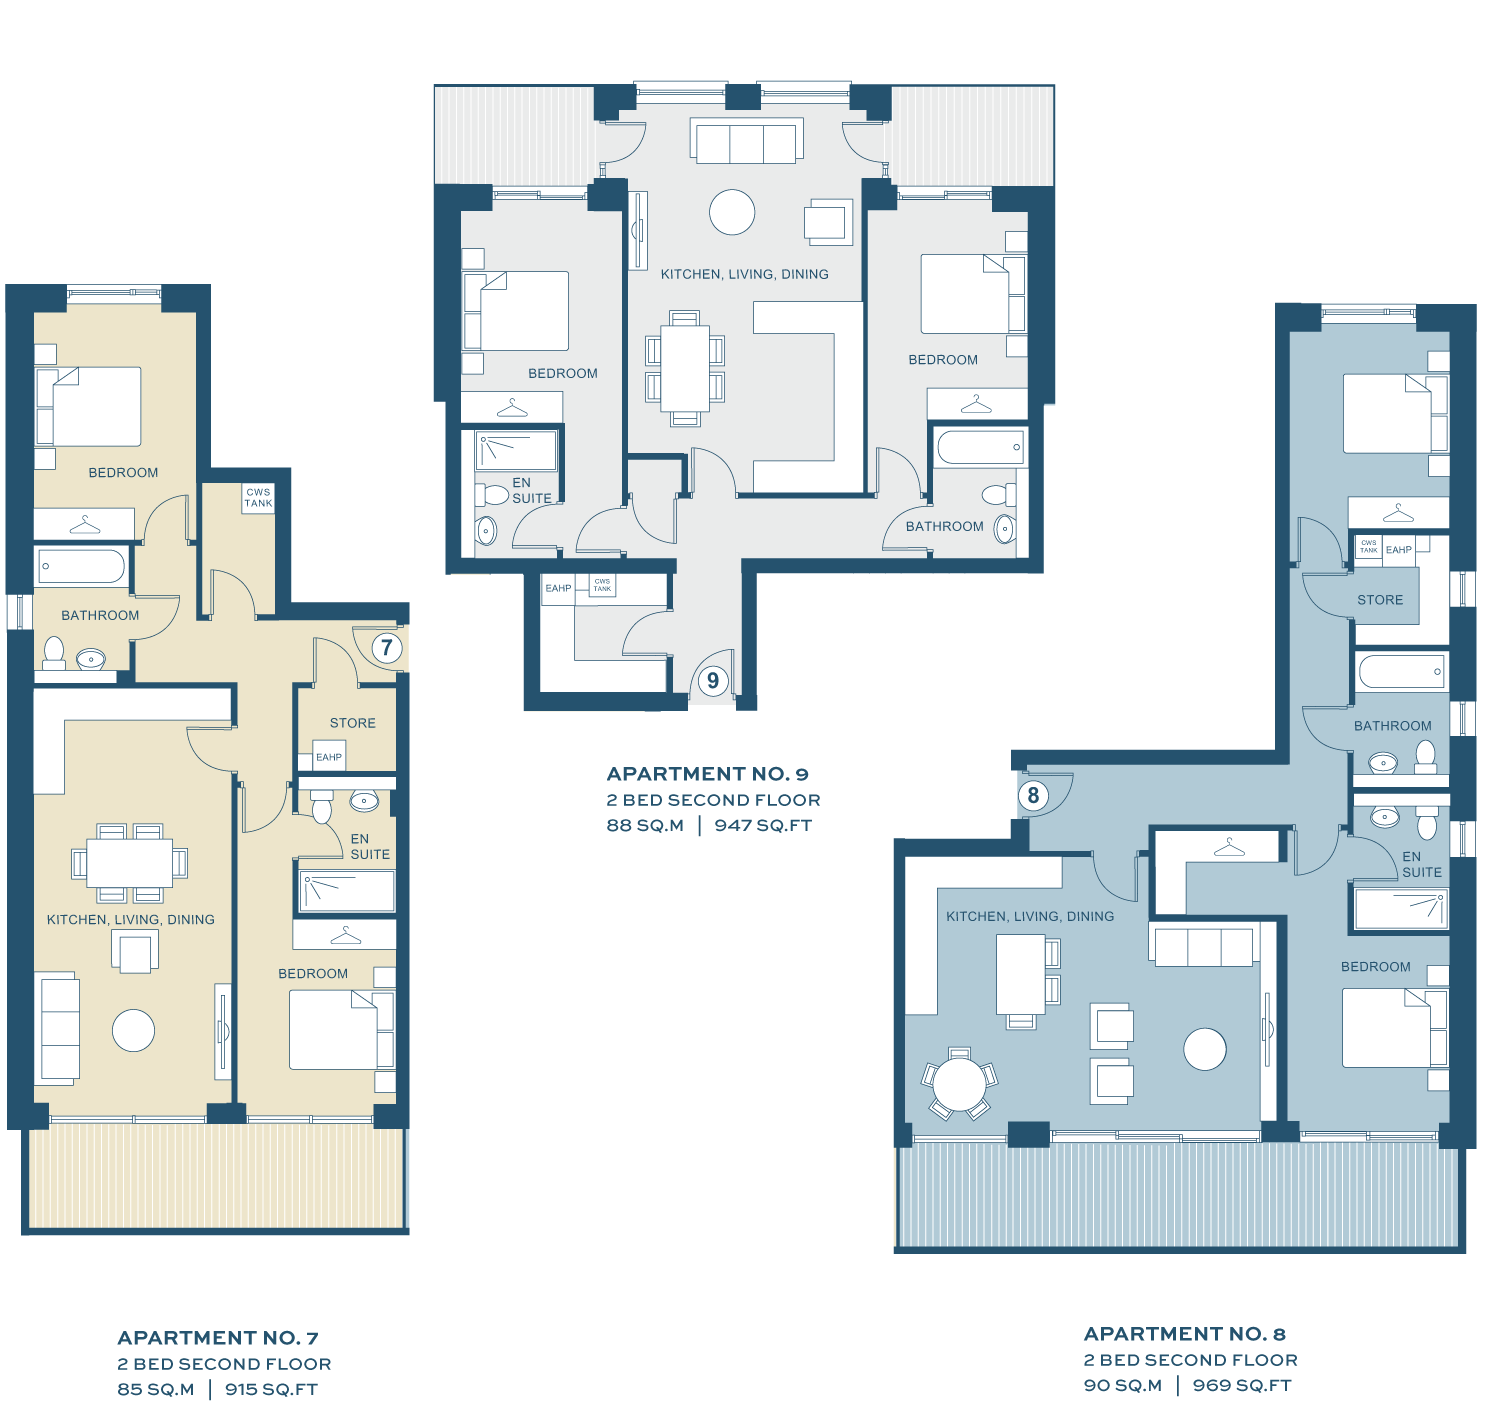 Second Floor Floor Plans